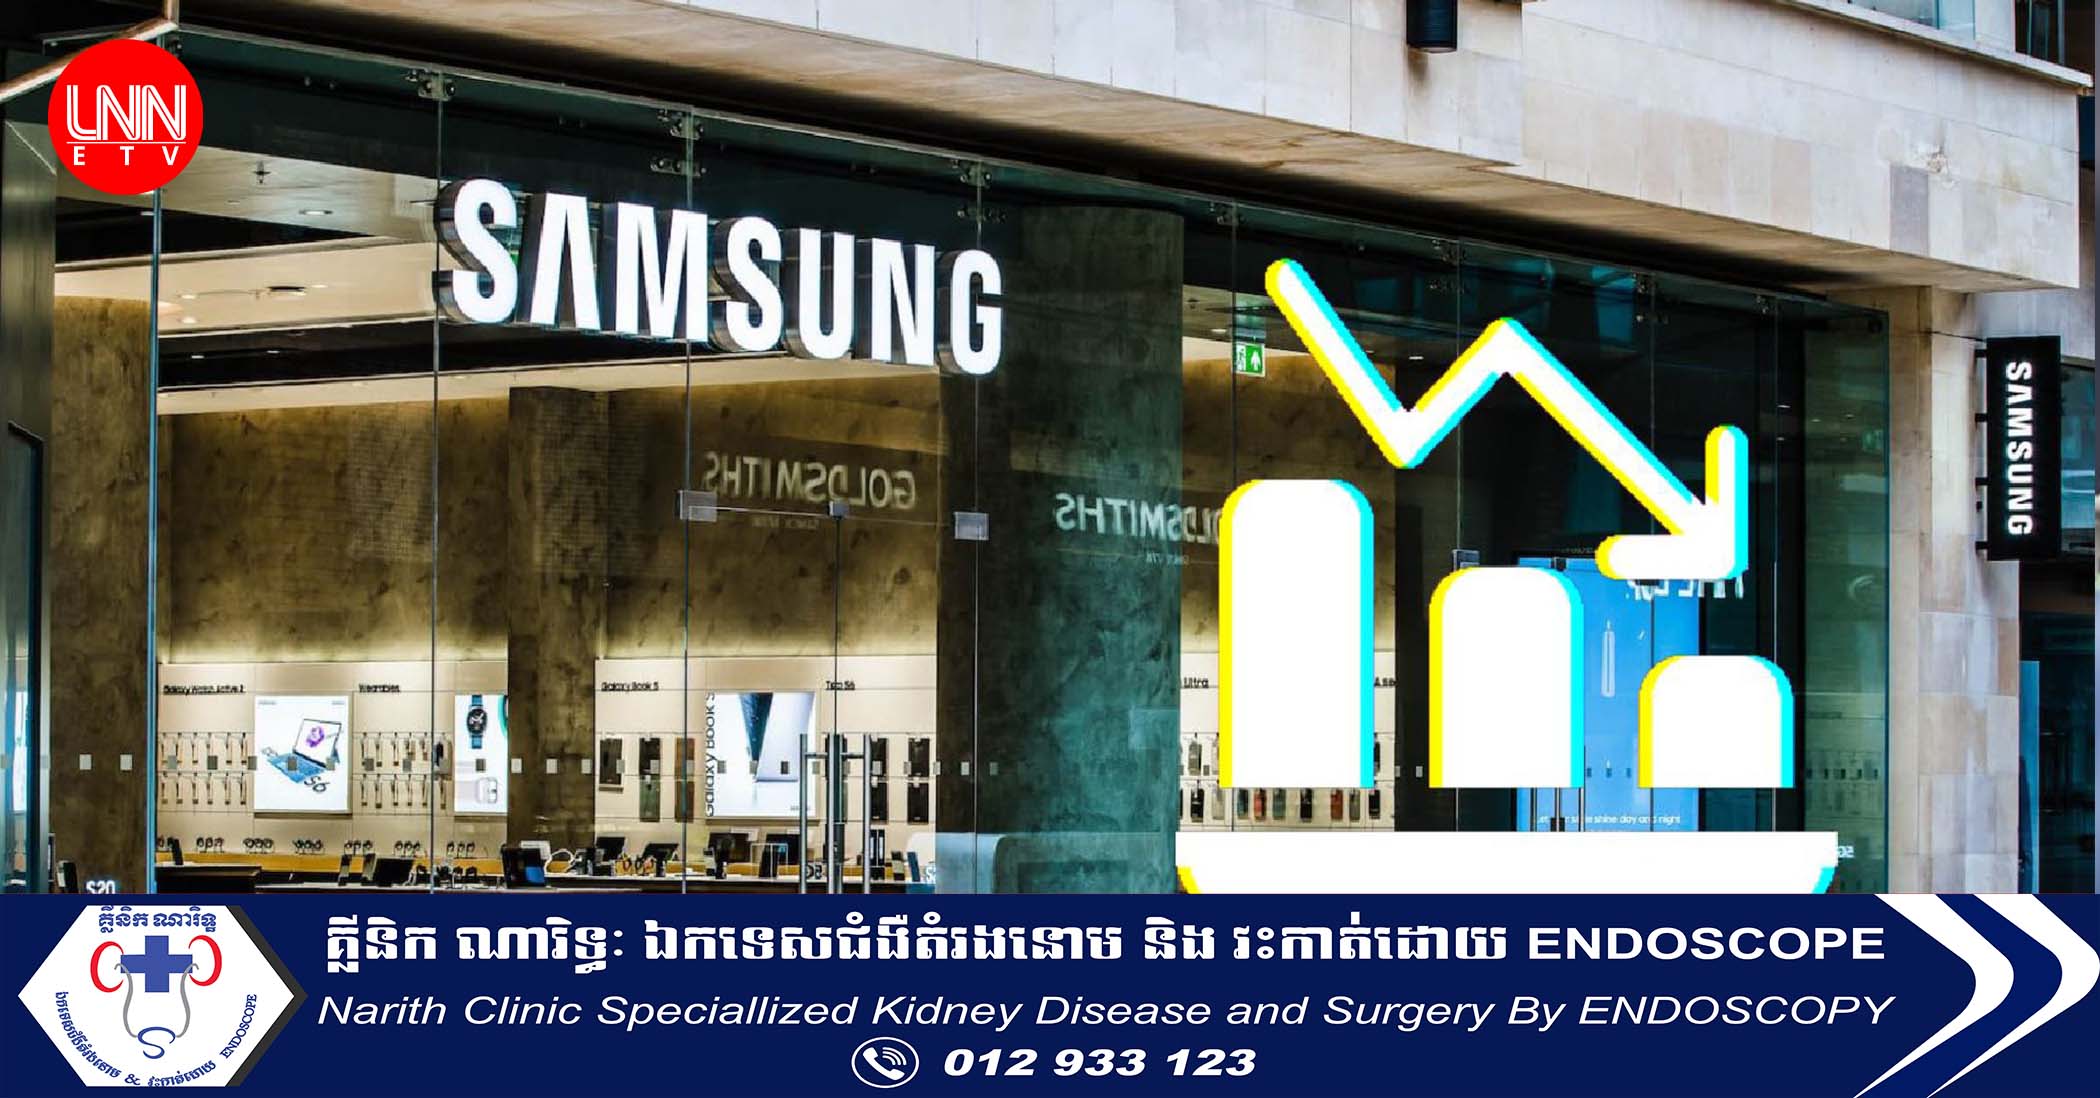 ក្រុមហ៊ុន Samsung Electronics ប្រកាសថាប្រាក់ចំណេញរបស់ខ្លួនអាចបន្តធ្លាក់ចុះជាង ៩៥% នៅត្រីមាសទី២